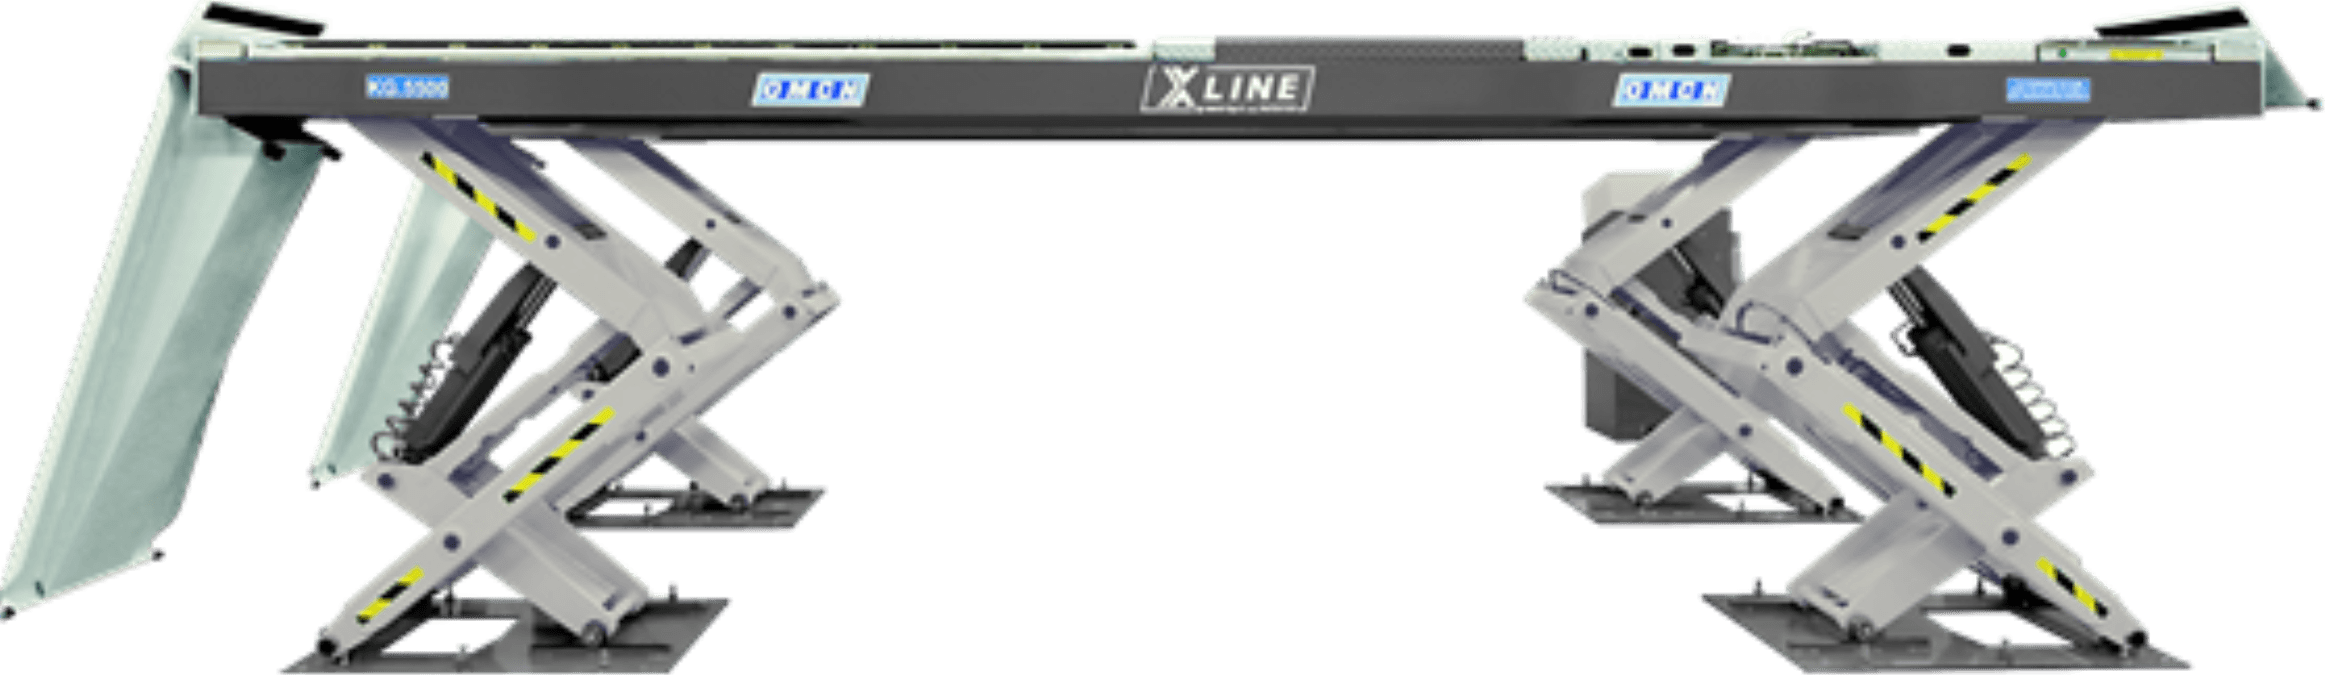 Schaarbrug met rijbaan OMCN X-line